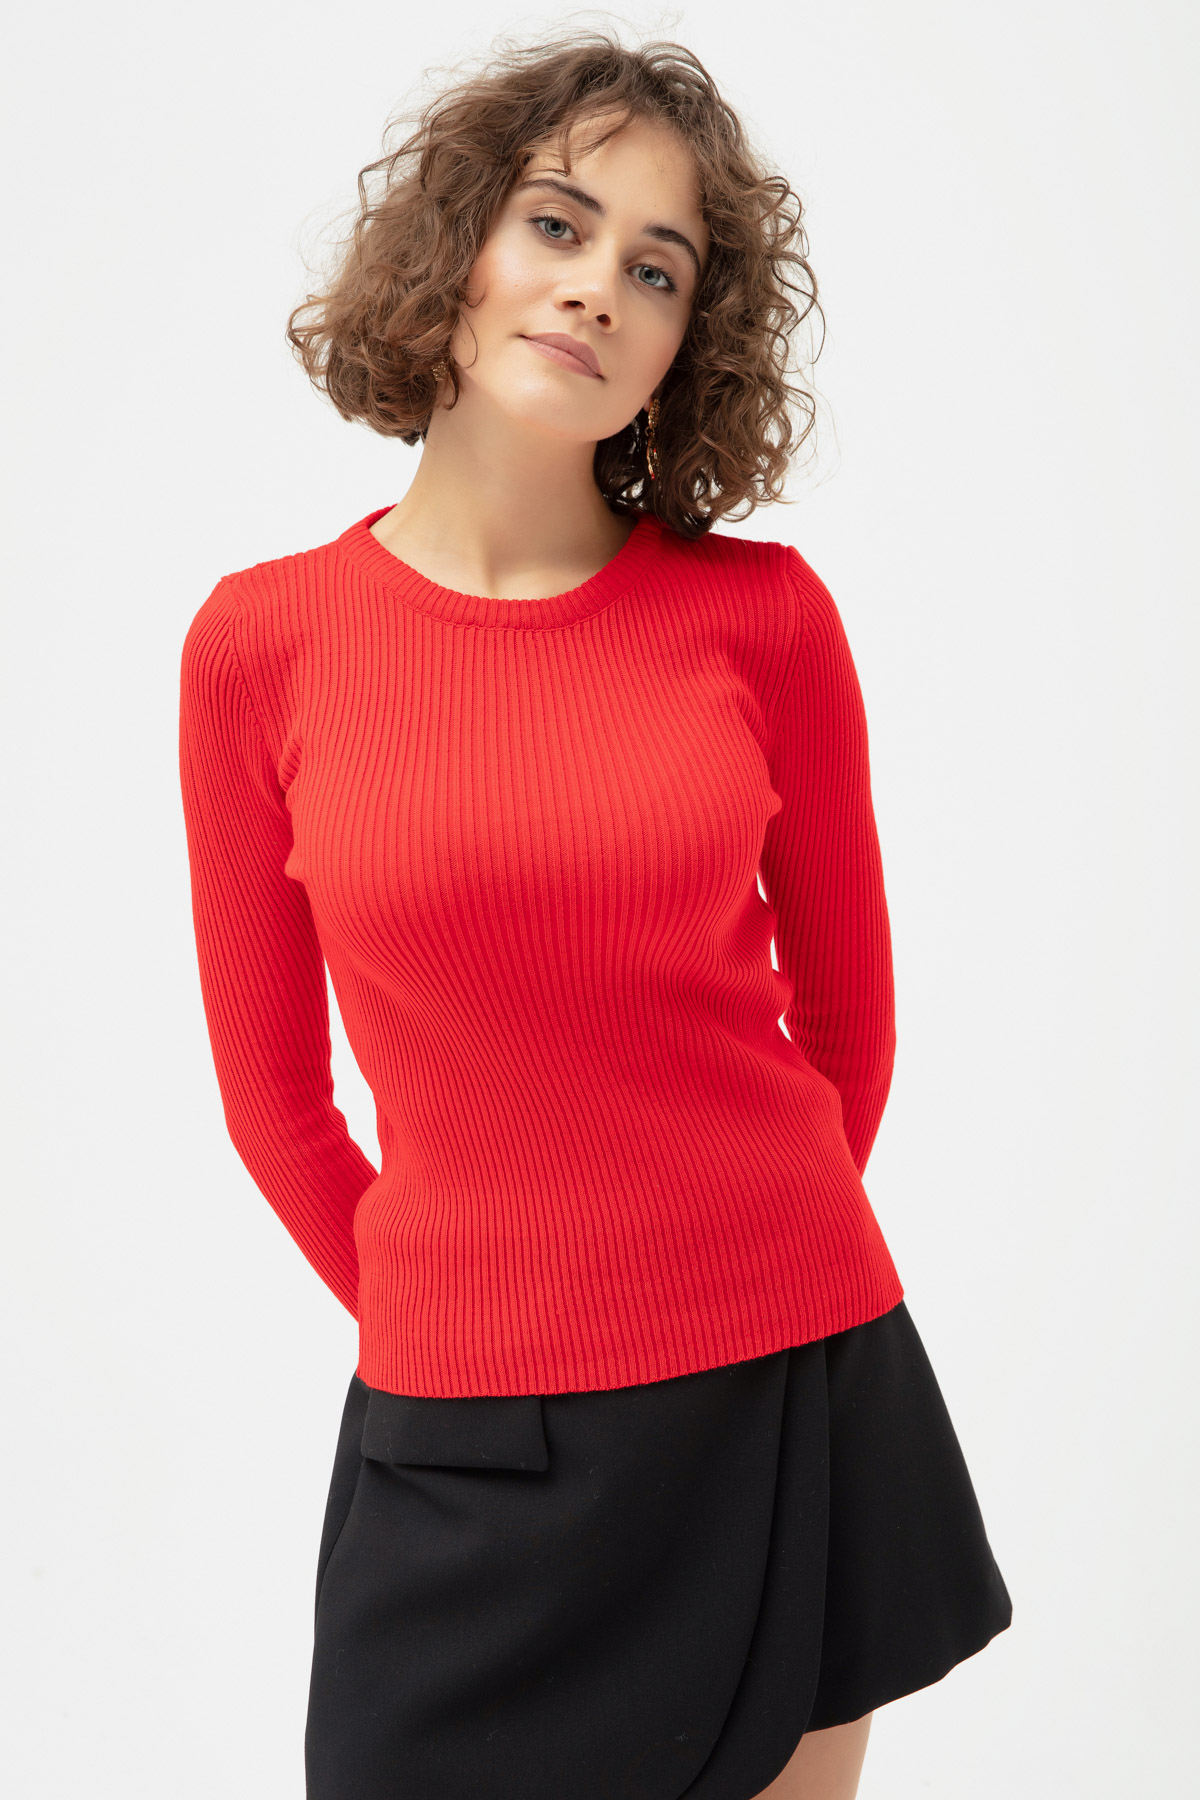 Women's Red Crew Neck Knitwear Sweater